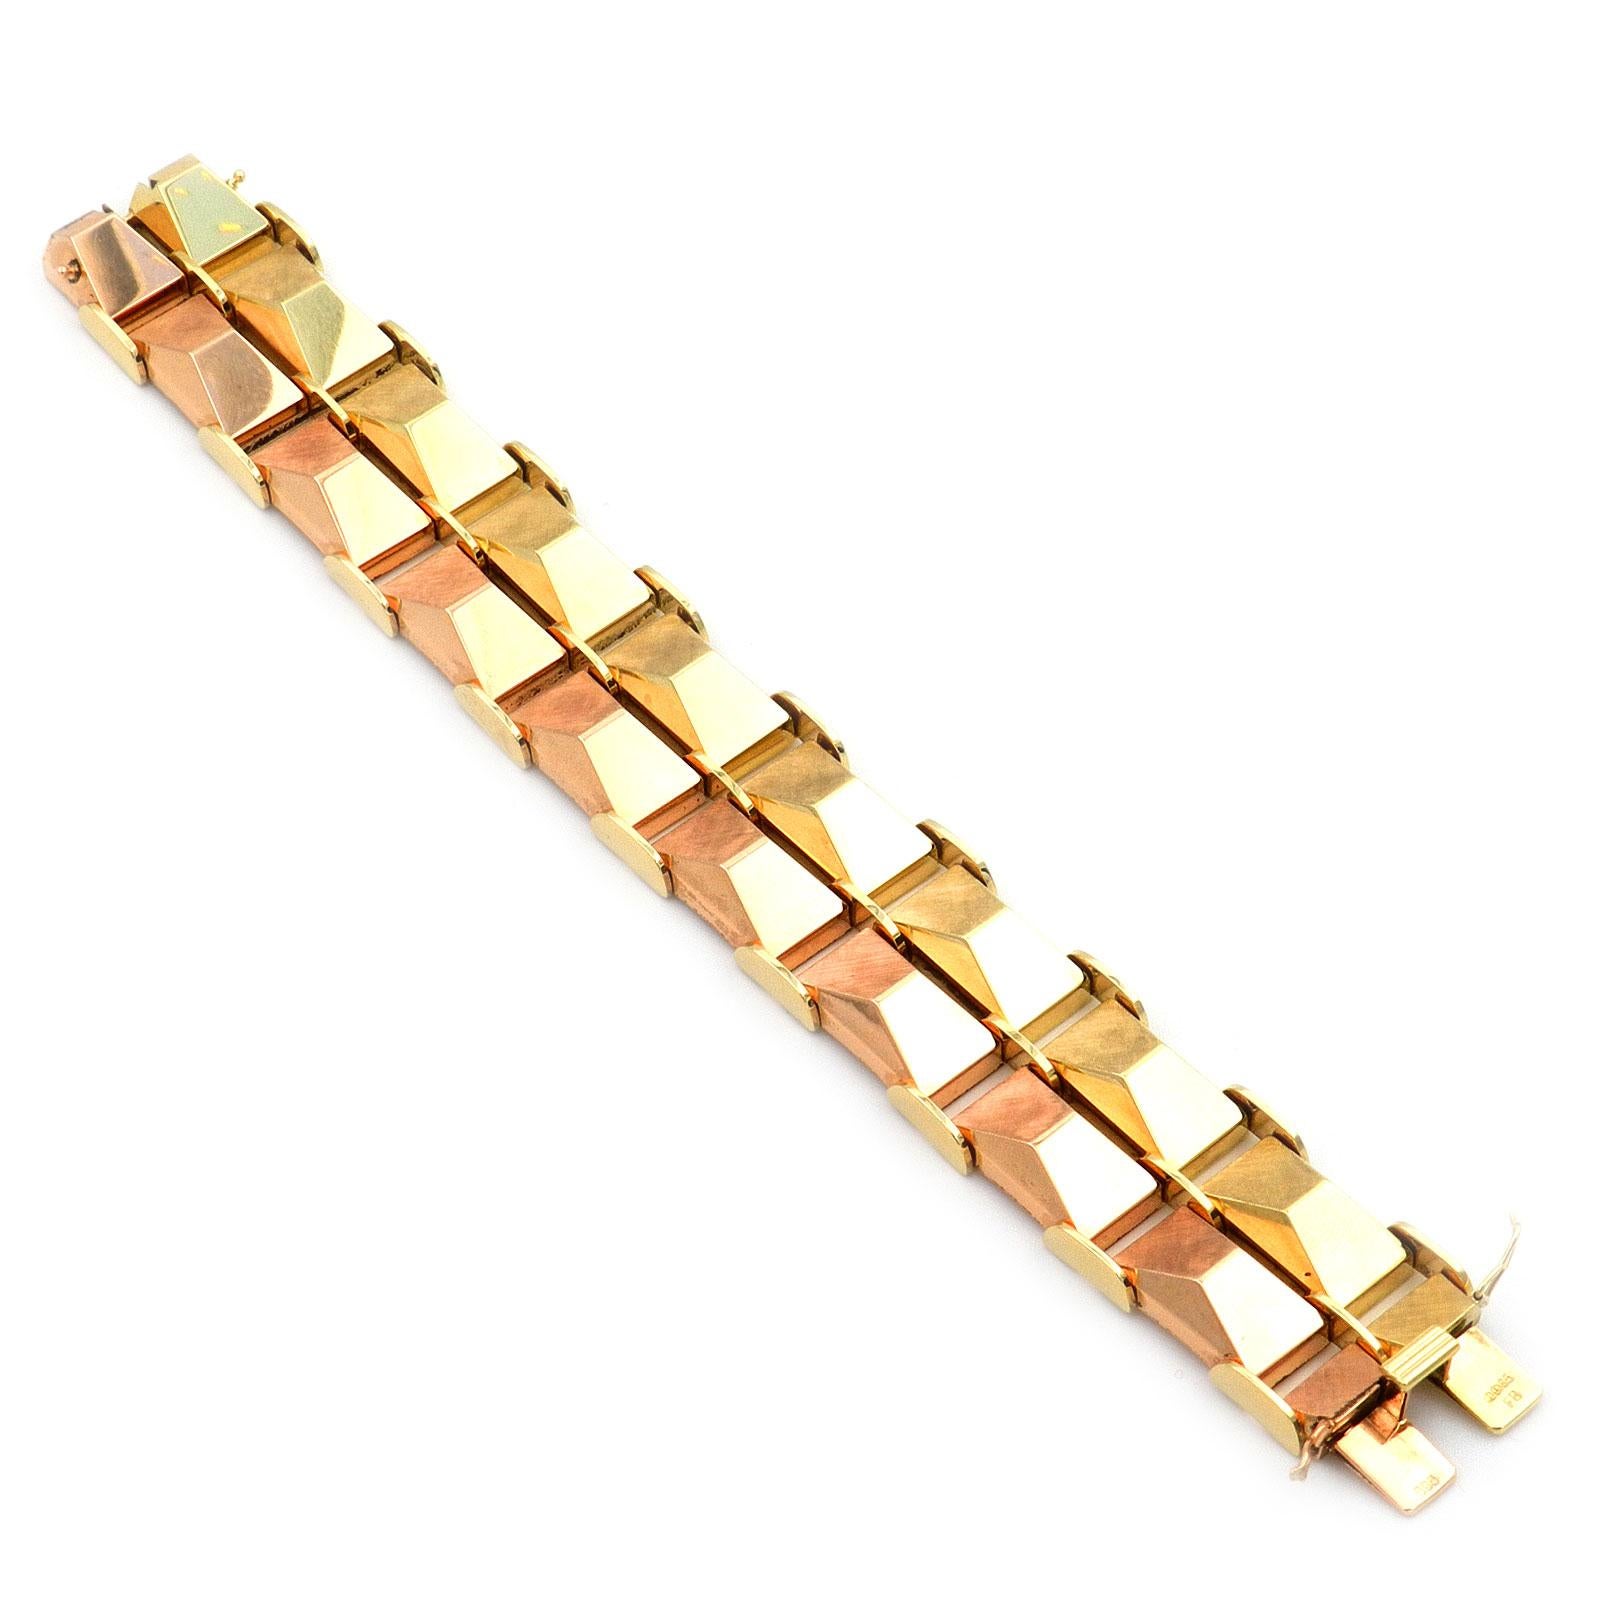 Bracelet rétro en or bicolore 14K, Allemagne, circa 1950

Bracelet large et lourd, en or bicolore à motif de briques, partiellement satiné. Les maillons en forme de losange sont polis d'un côté, satinés de l'autre et disposés en deux rangées d'or